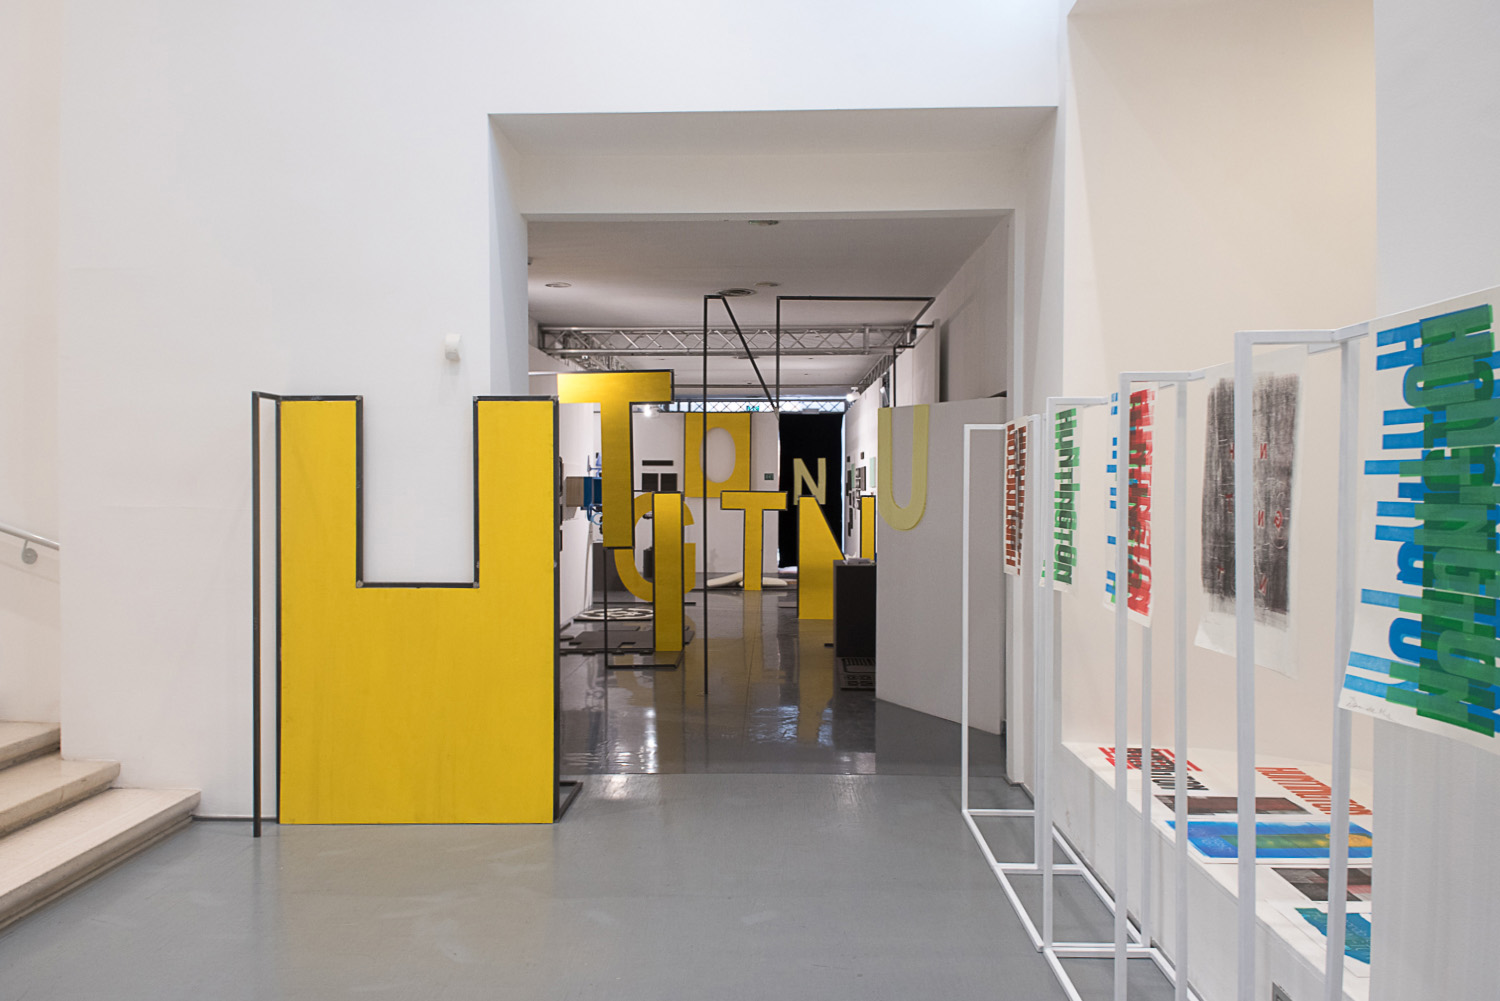 Secondo nome: Huntington. Design for All, Design for Huntington, exhibition view at La Triennale di Milano, 2017, photo Fasiello